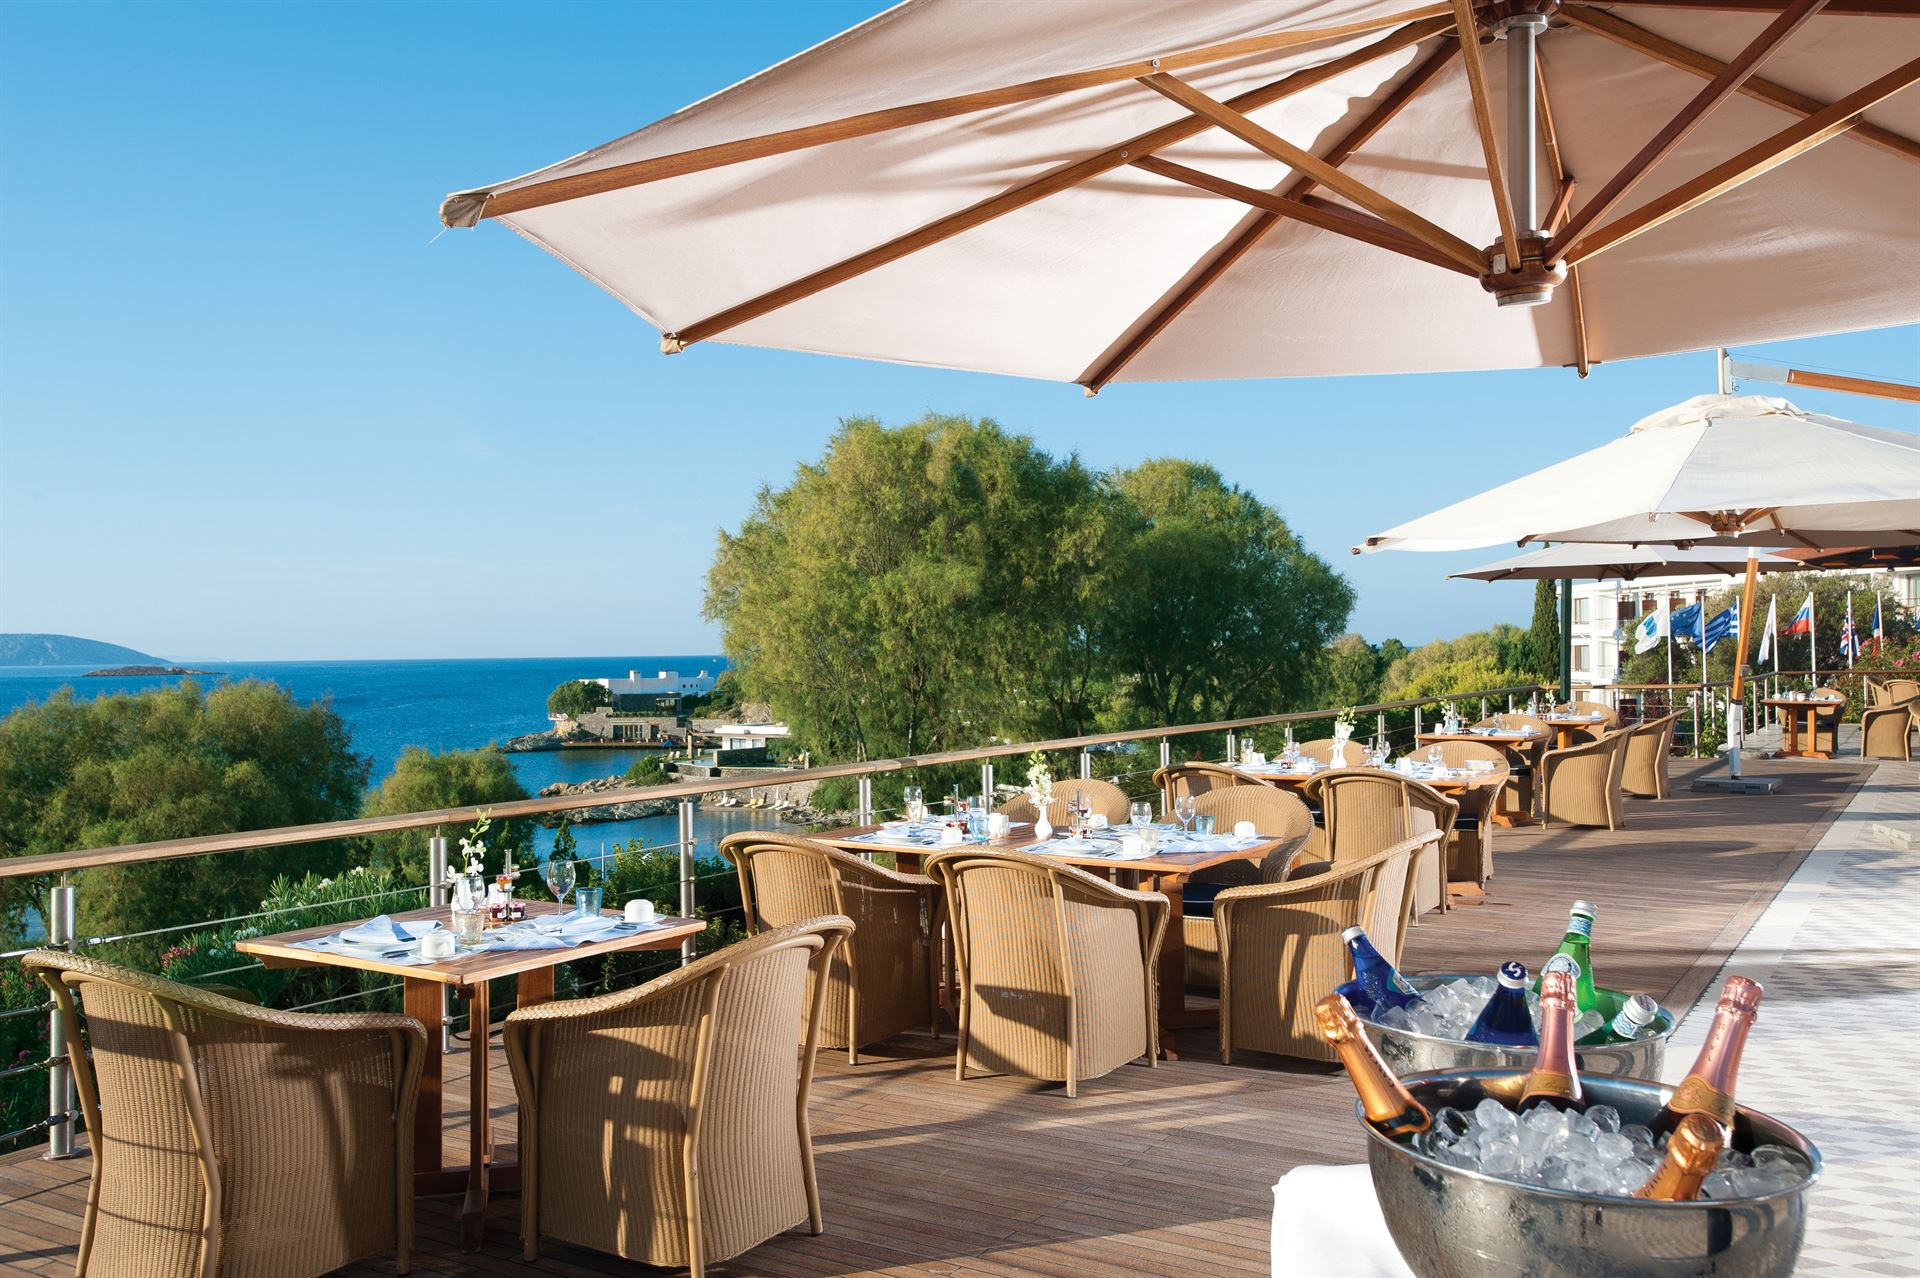 Grand Resort Lagonissi: Aphrodite restaurant